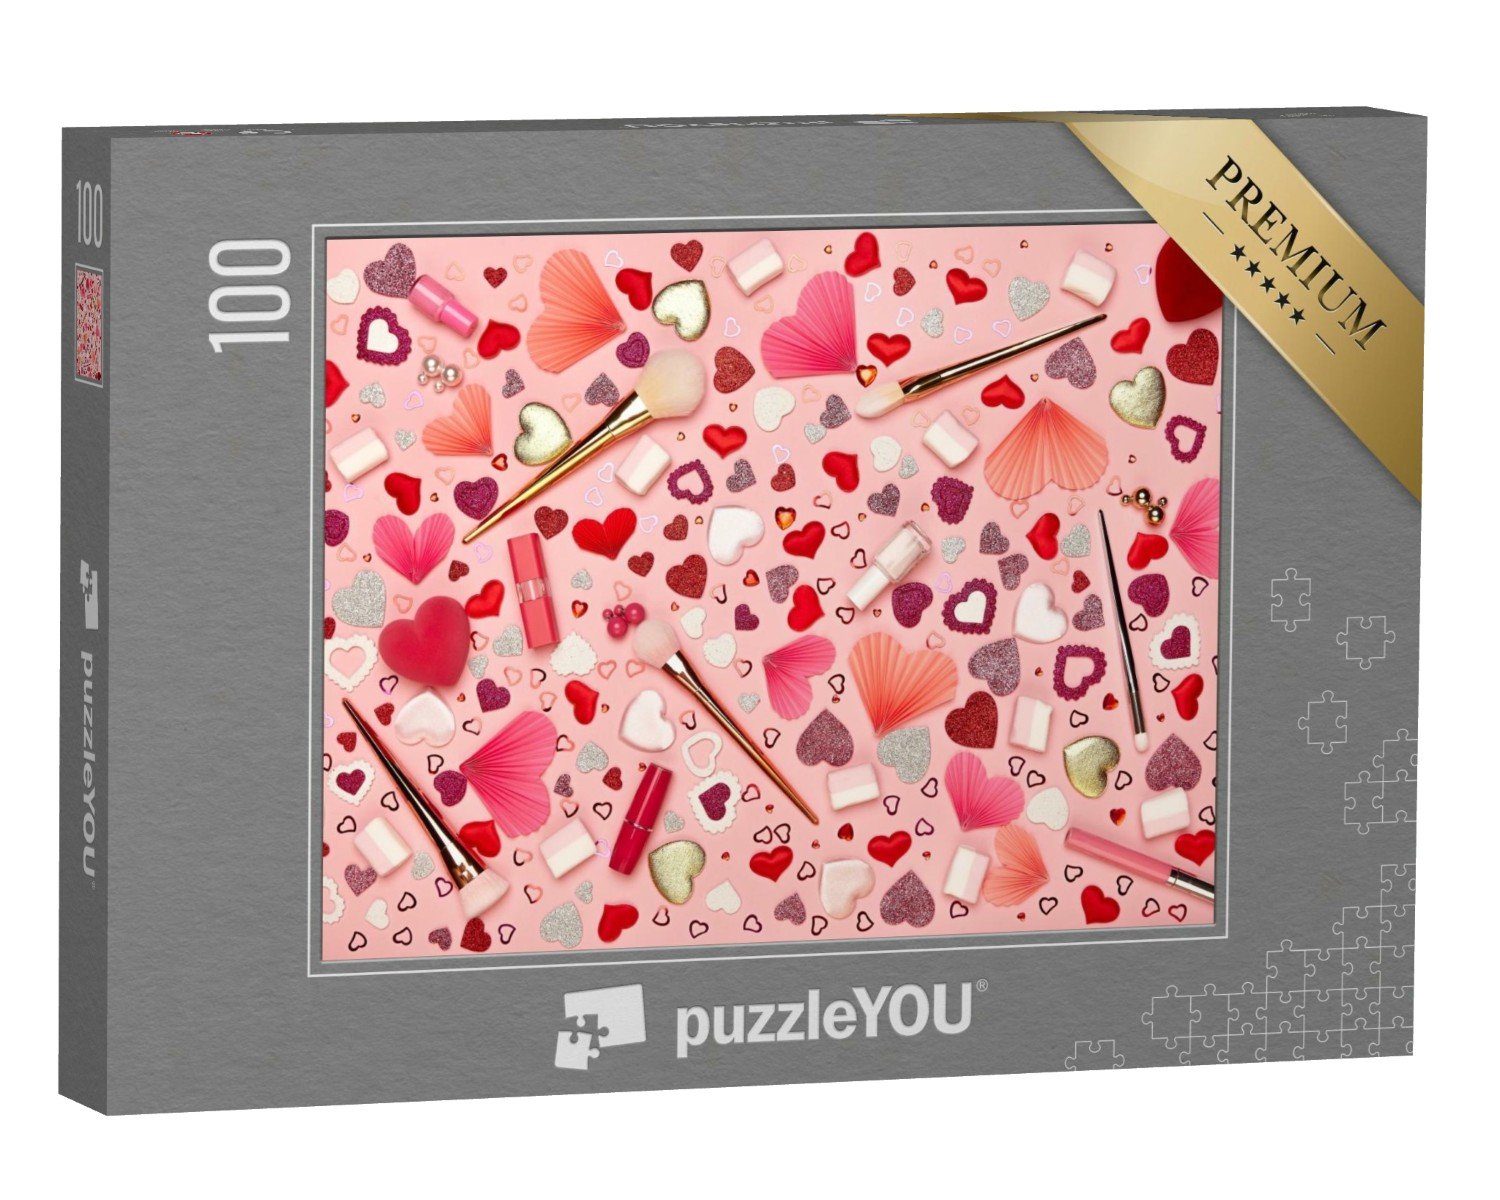 puzzleYOU Puzzle Arrangement von Make-up und Herzen, 100 Puzzleteile, puzzleYOU-Kollektionen Festtage